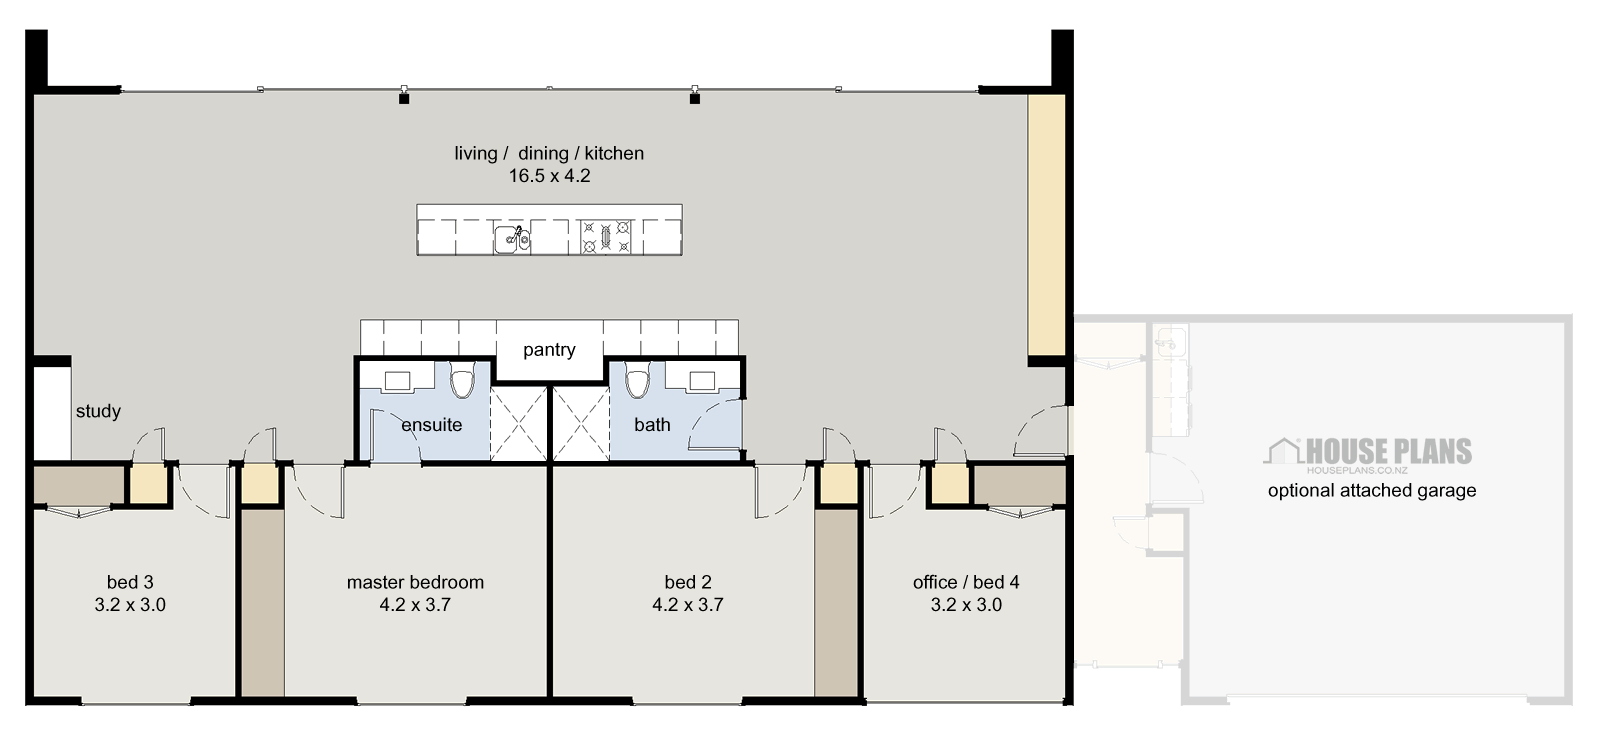 Symmetry HOUSE PLANS NEW ZEALAND LTD